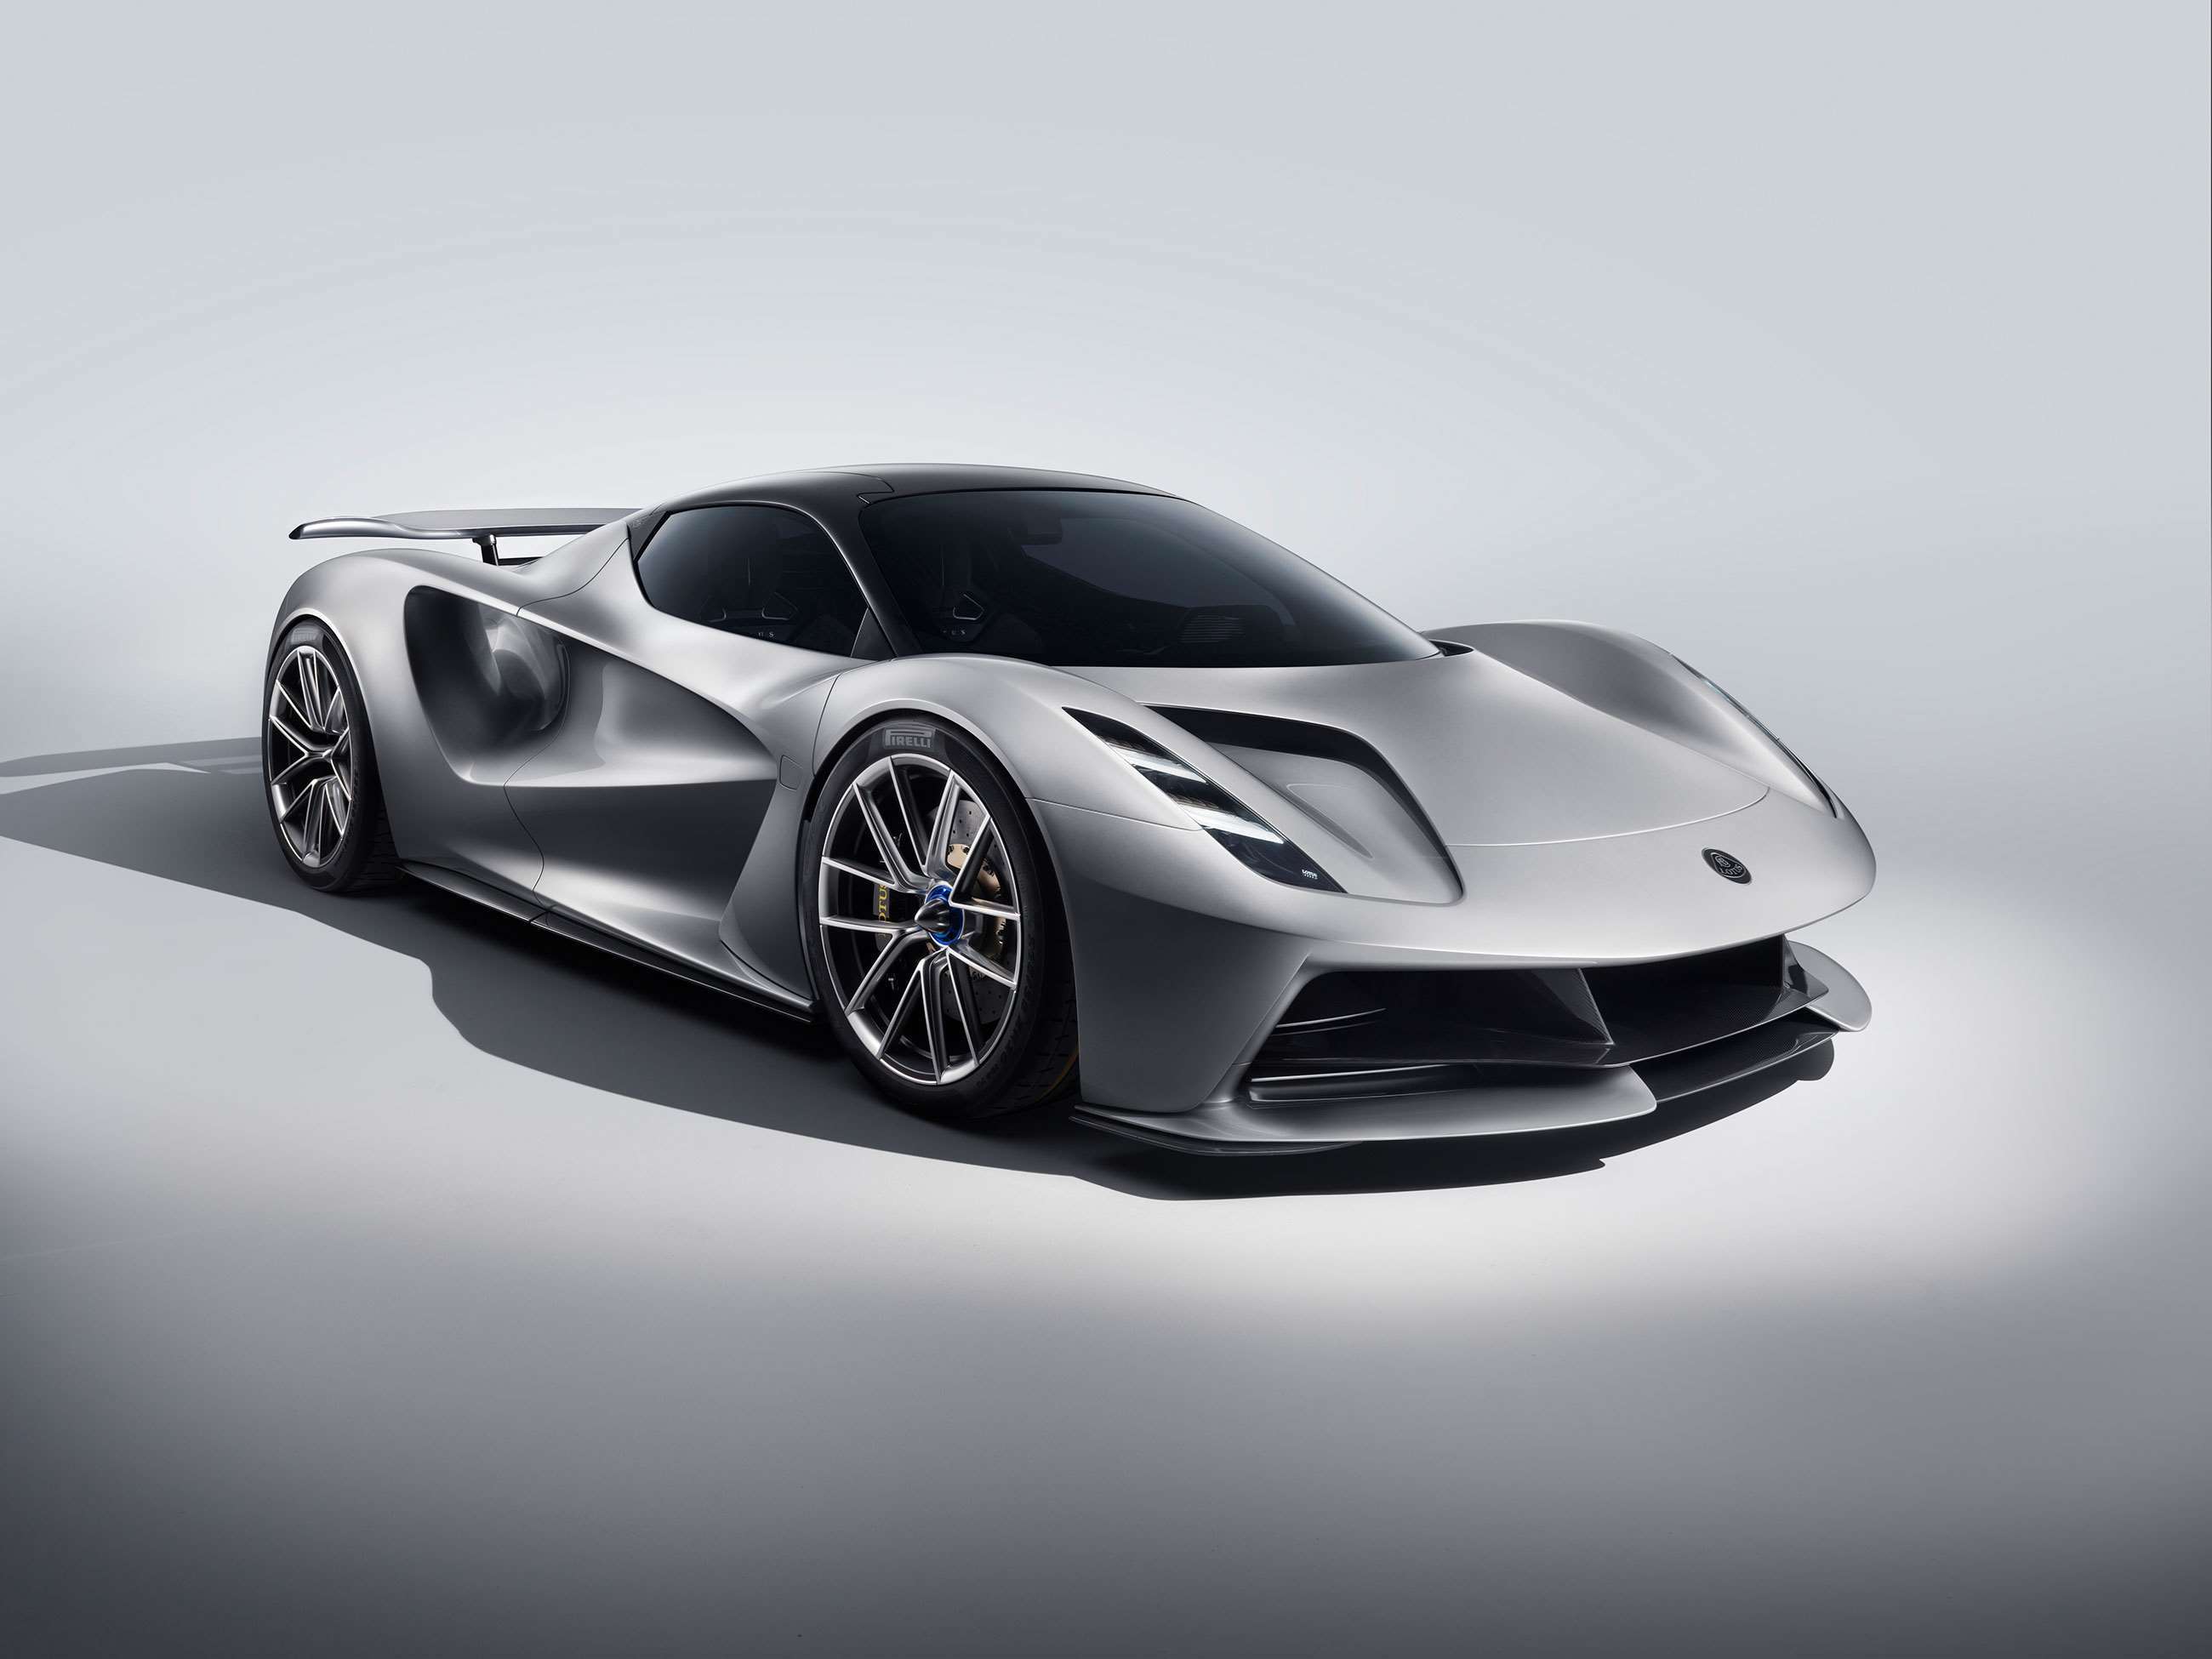 most-powerful-cars-on-sale-1-lotus-evija-goodwood-10092020.jpg